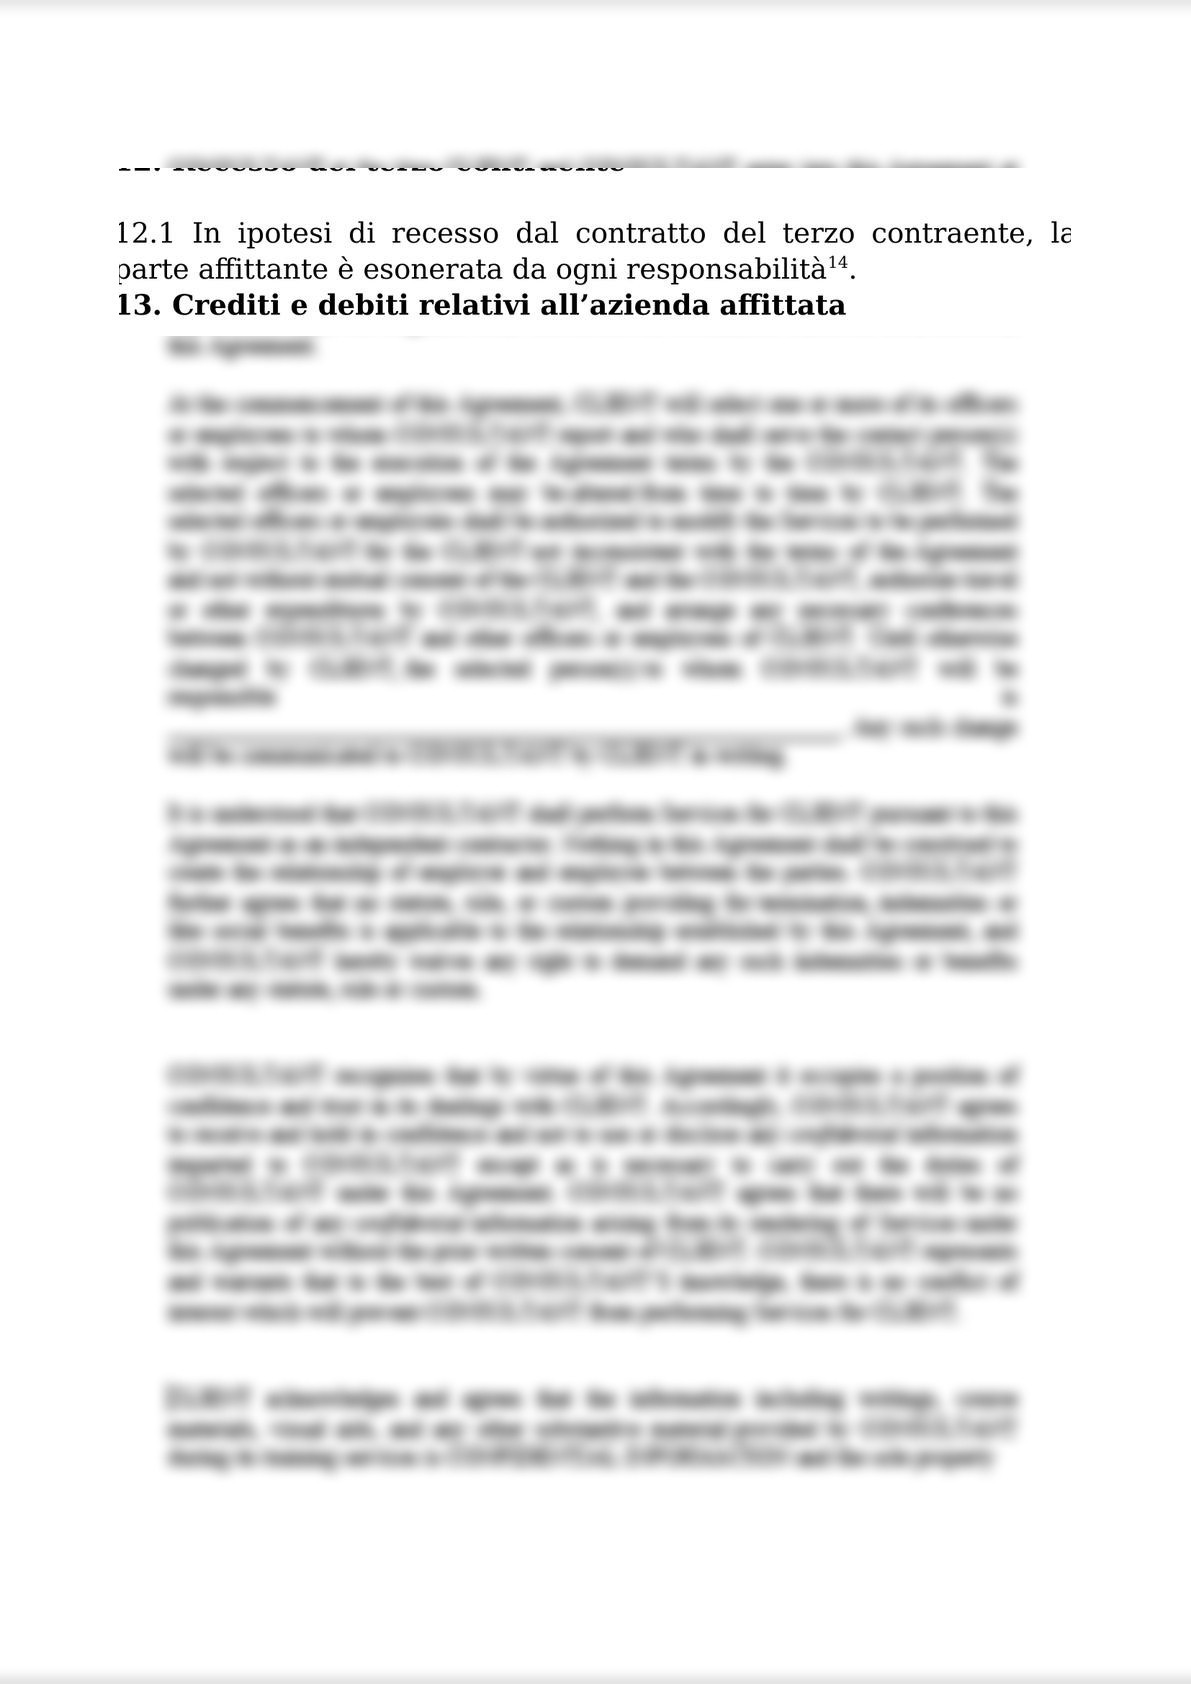 RENTAL AGREEMENT  FOR THE COMPANY AND BUSINESS UNITS / CONTRATTO DI AFFITTO DI AZIENDA O DI UN RAMO DI ESSA-5